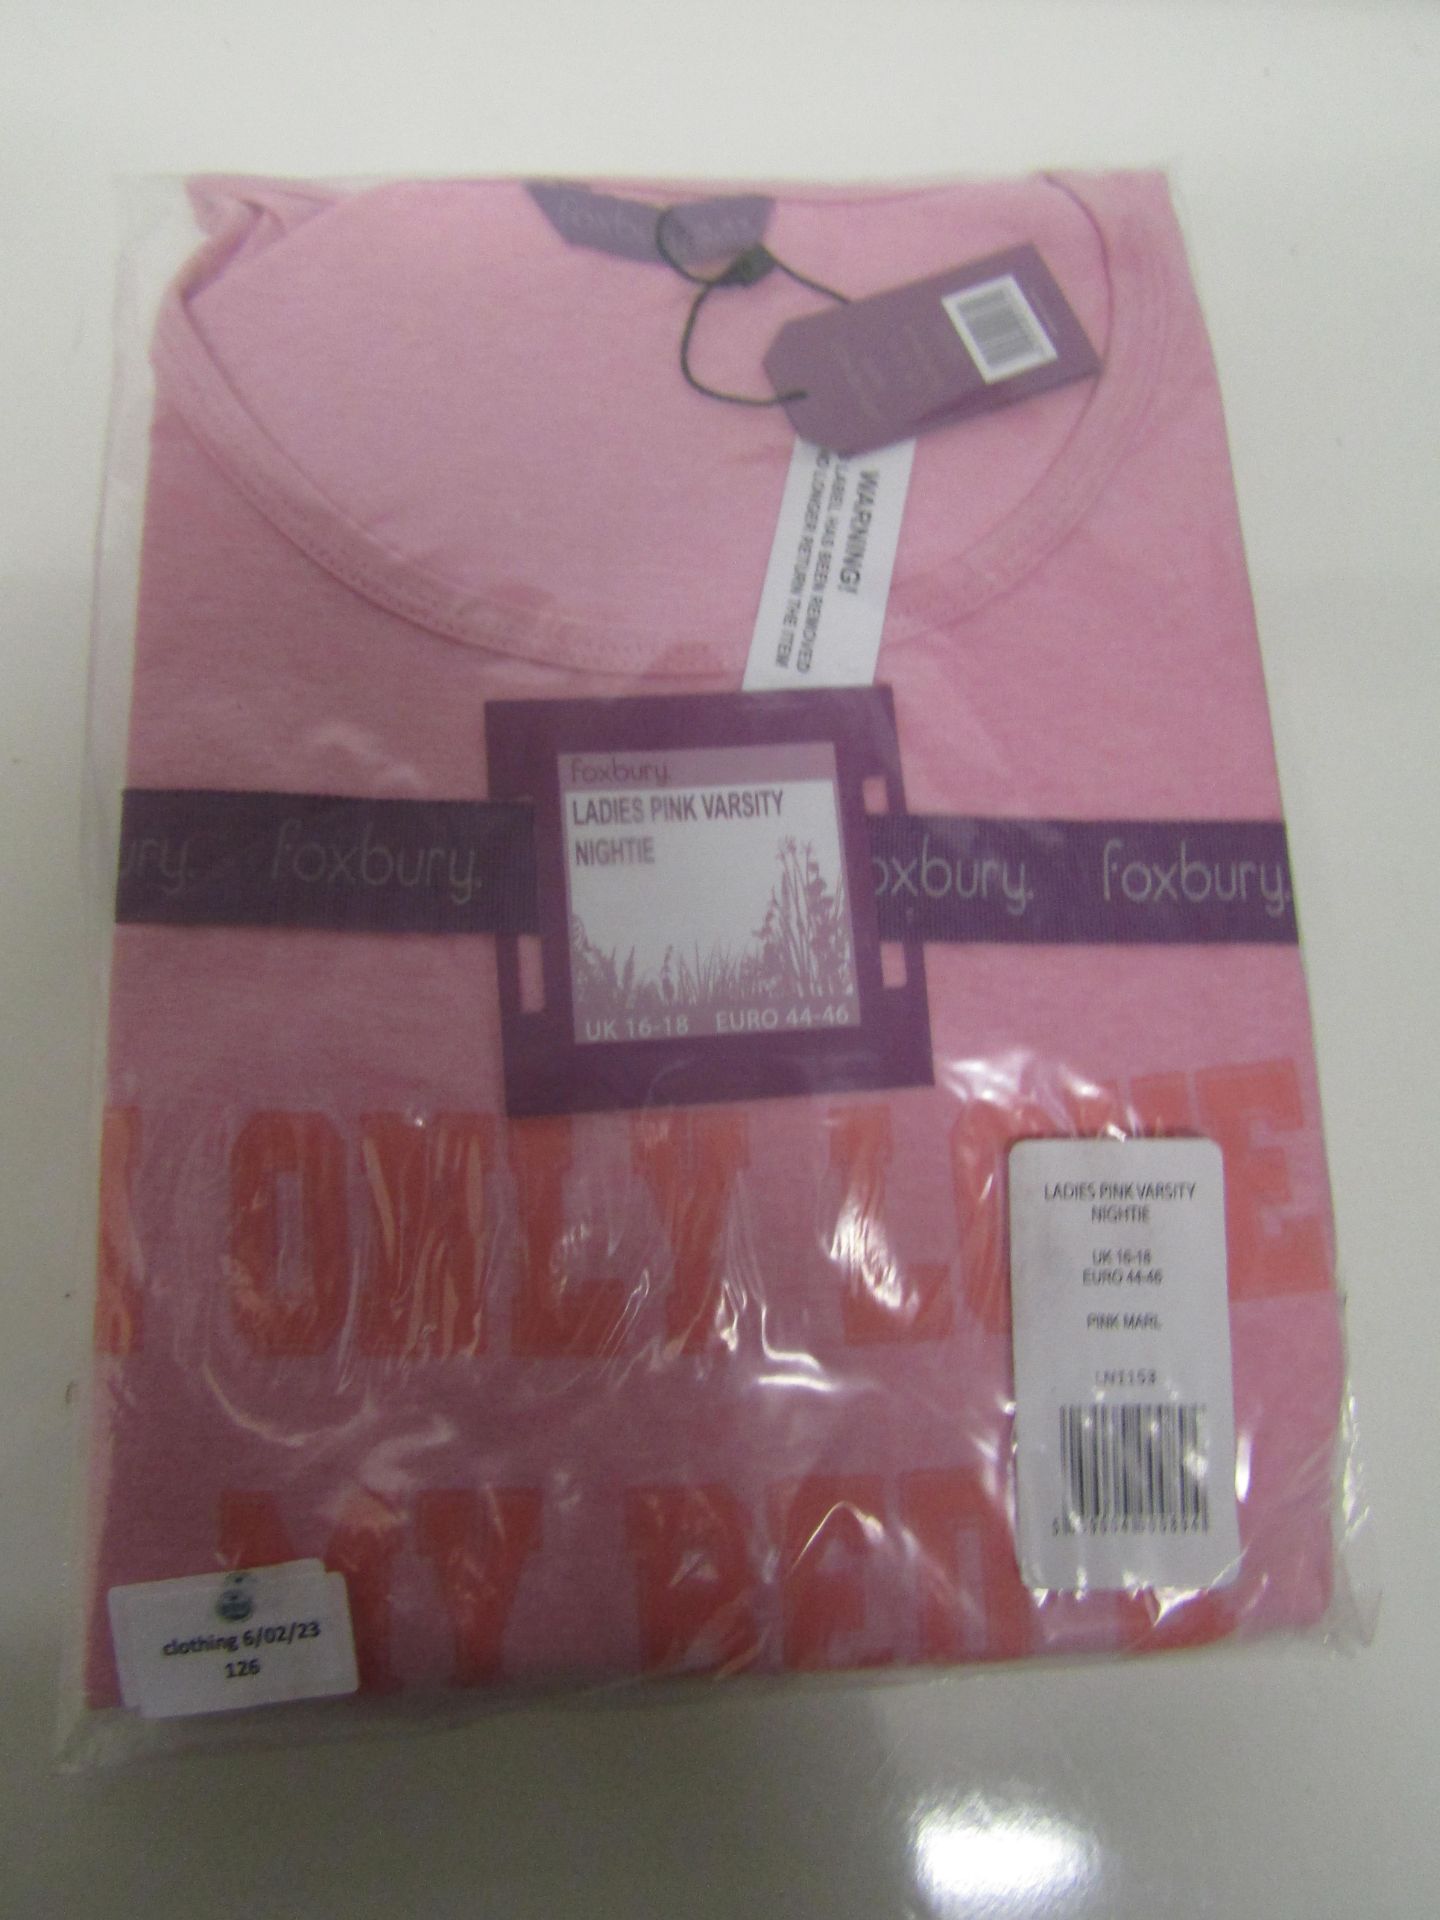 Foxbury Ladies Pink Varsity Short Sleeve Nightie Size 16-18 New & Packaged